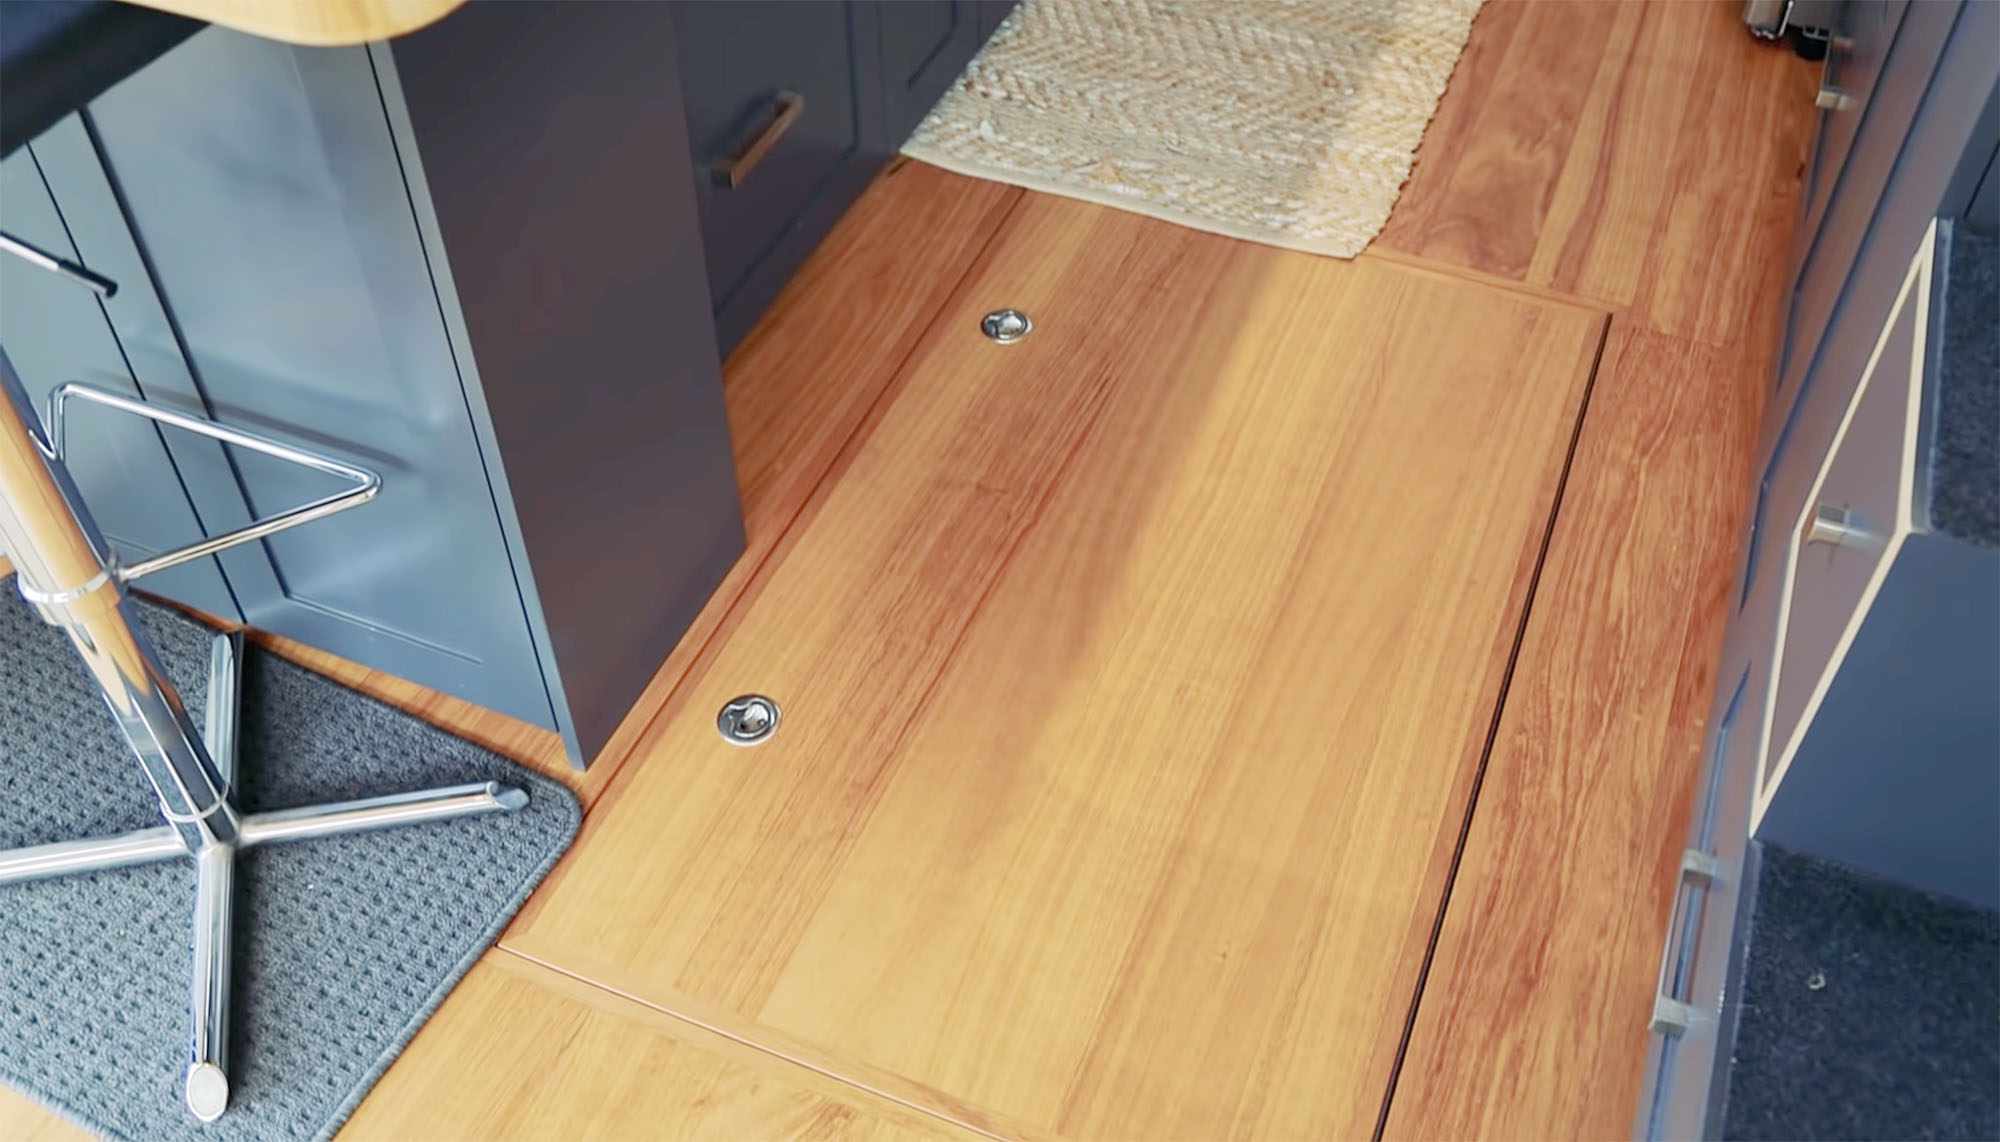 马克的DIY现代小房子地板储物“width=